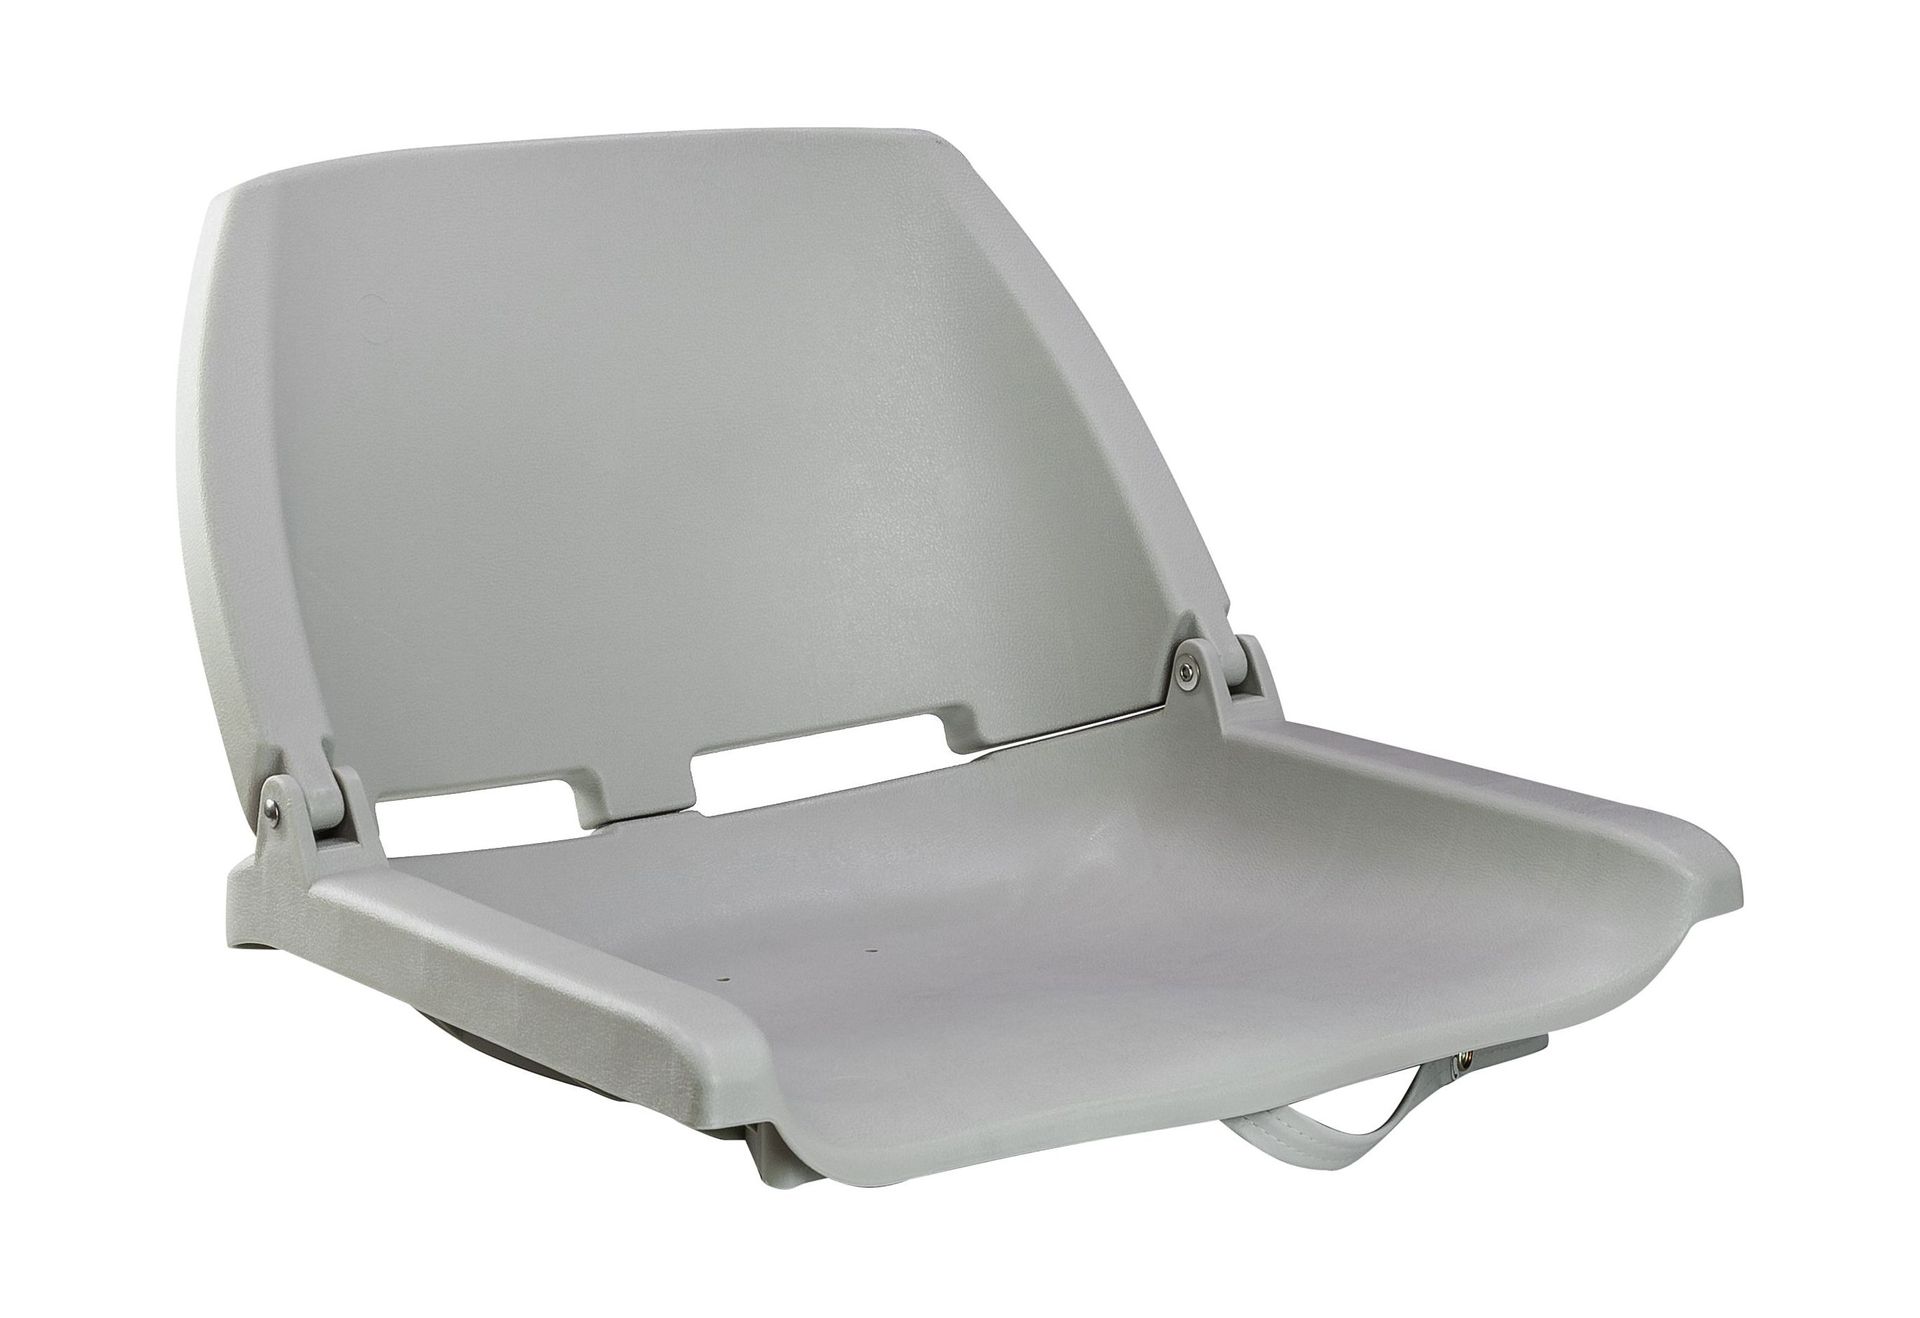 Кресло складное, пластик, цвет серый, Marine Rocket 75110G-MR кресло мягкое складное камуфляж осень marine rocket 75107max5 mr